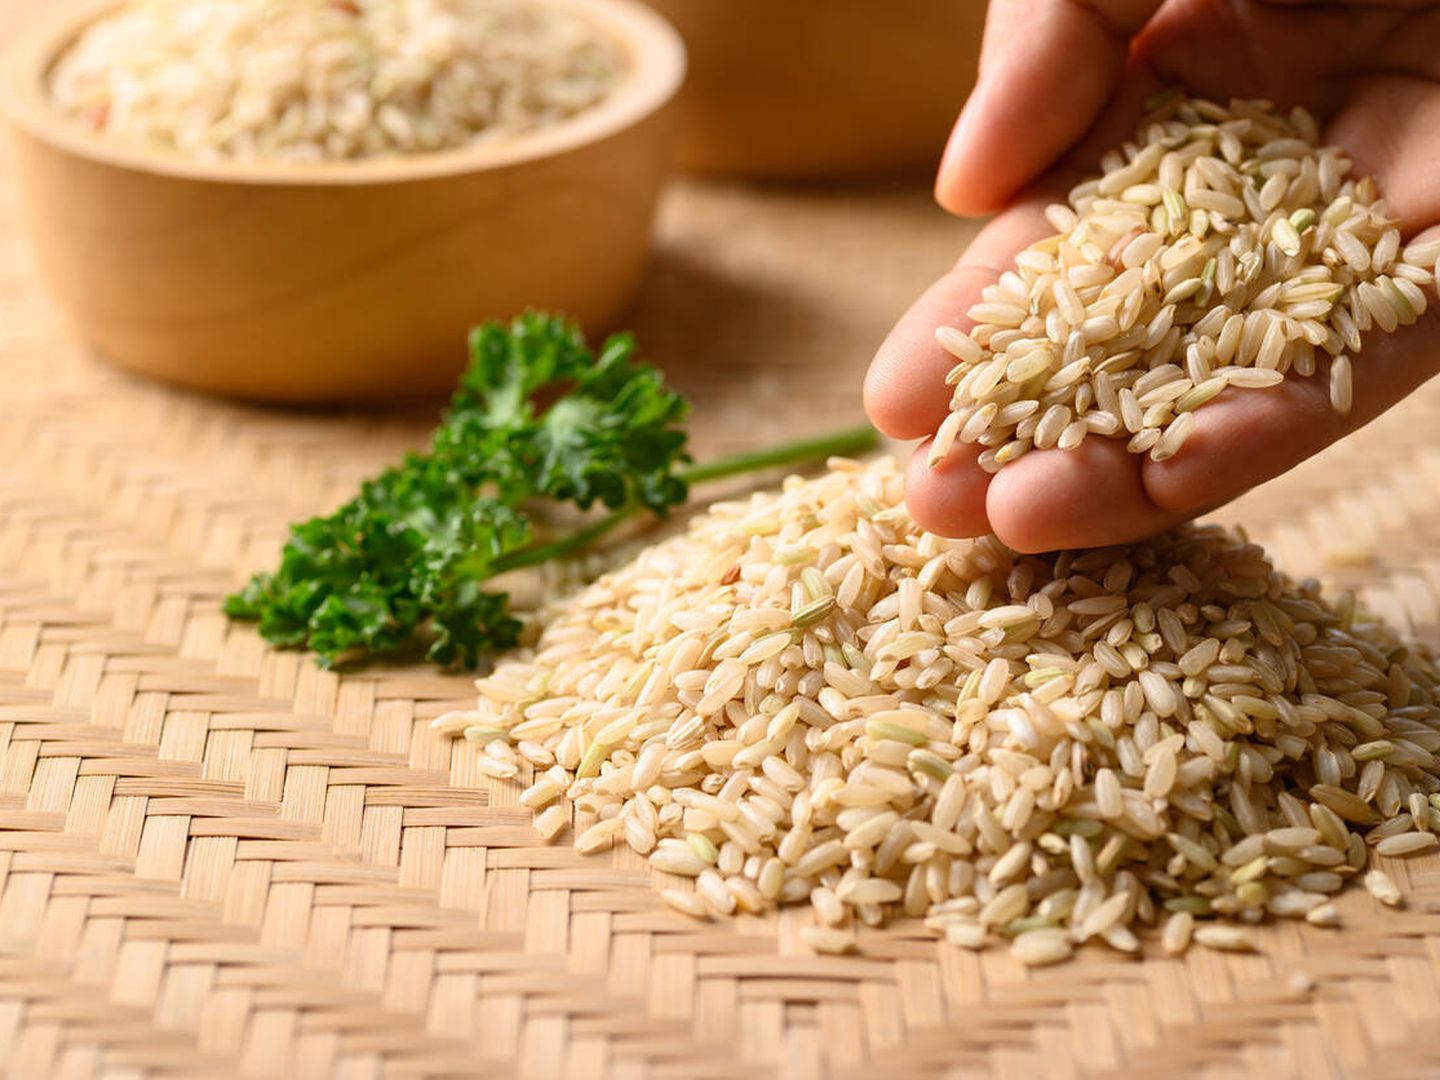 El arroz integral puede contener arsénico, pero en dosis que no son peligrosas. (iStock)